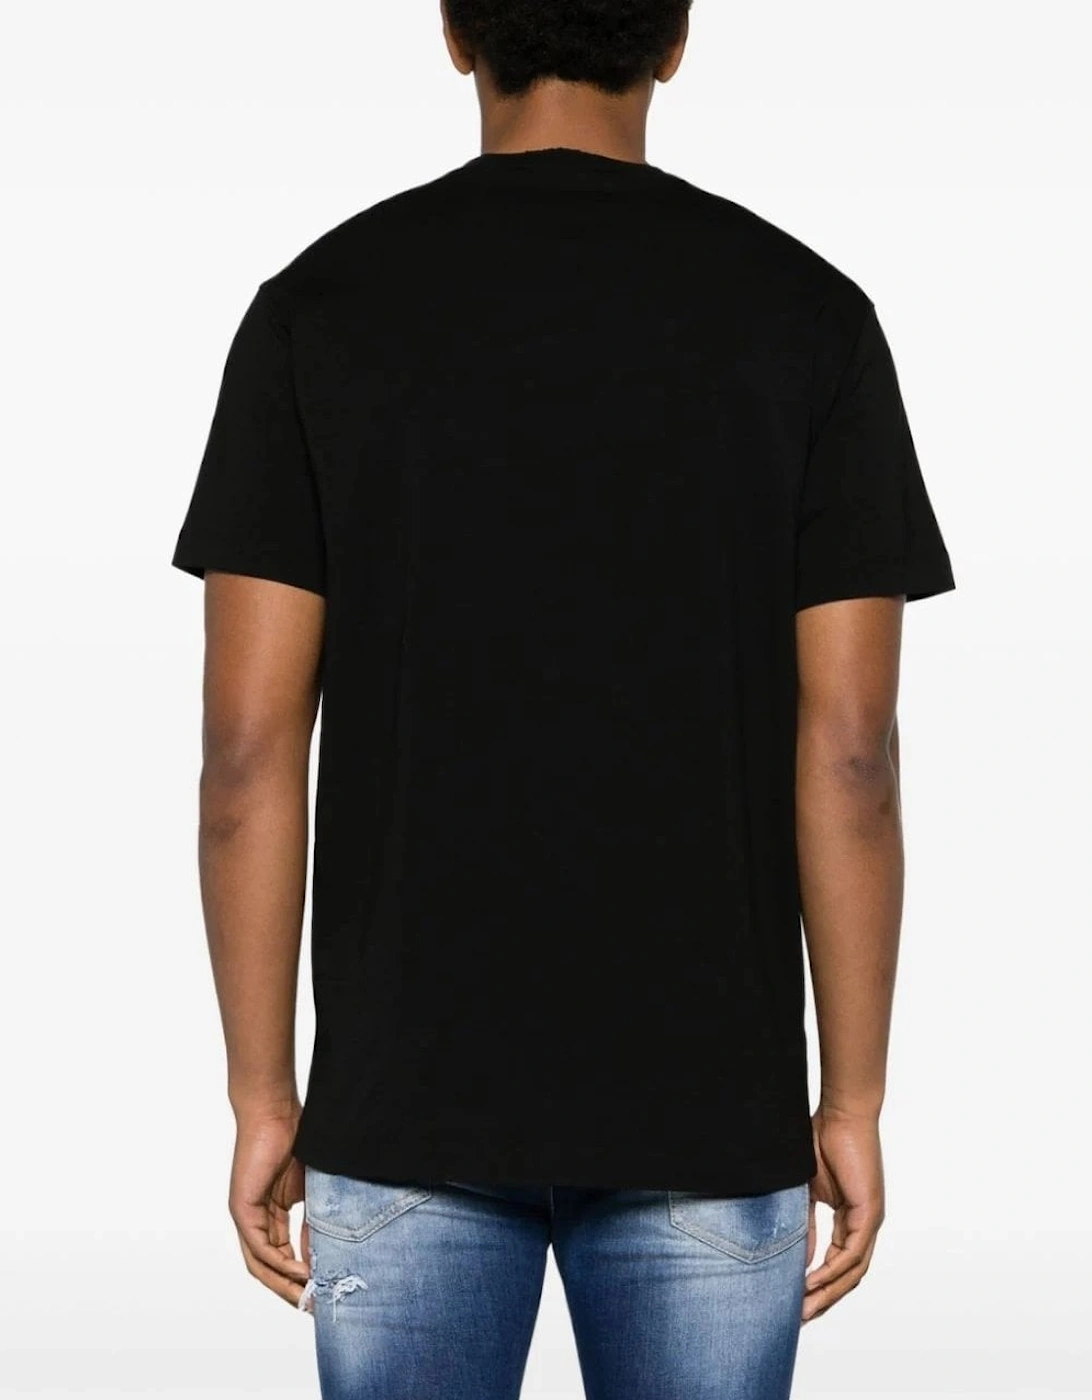 Cool Fit Drip Branding T-shirt Black